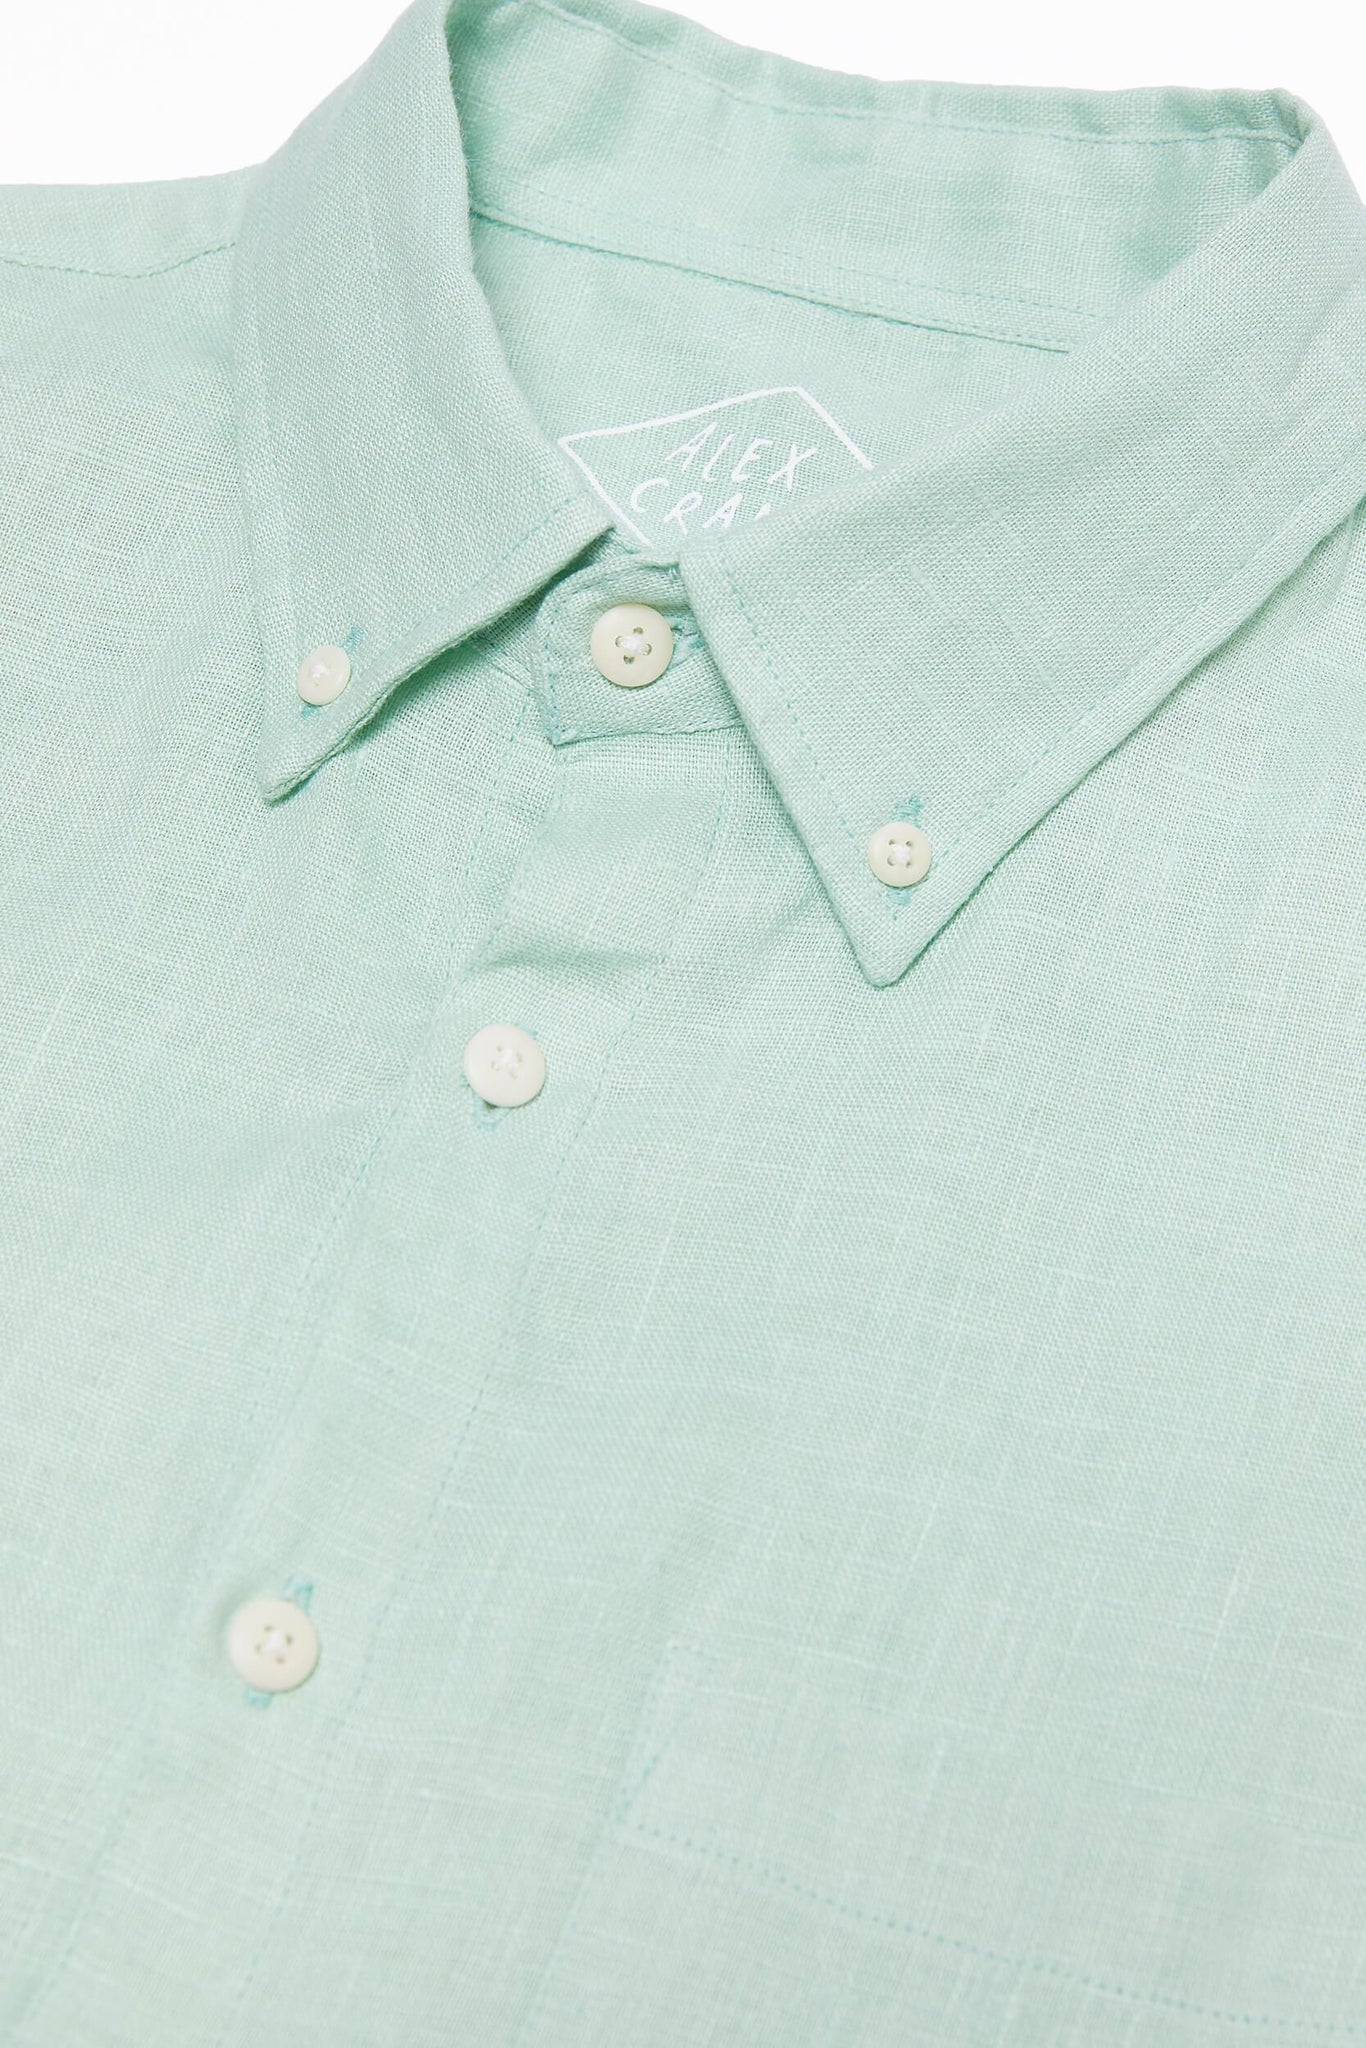 Playa Shirt / Mint